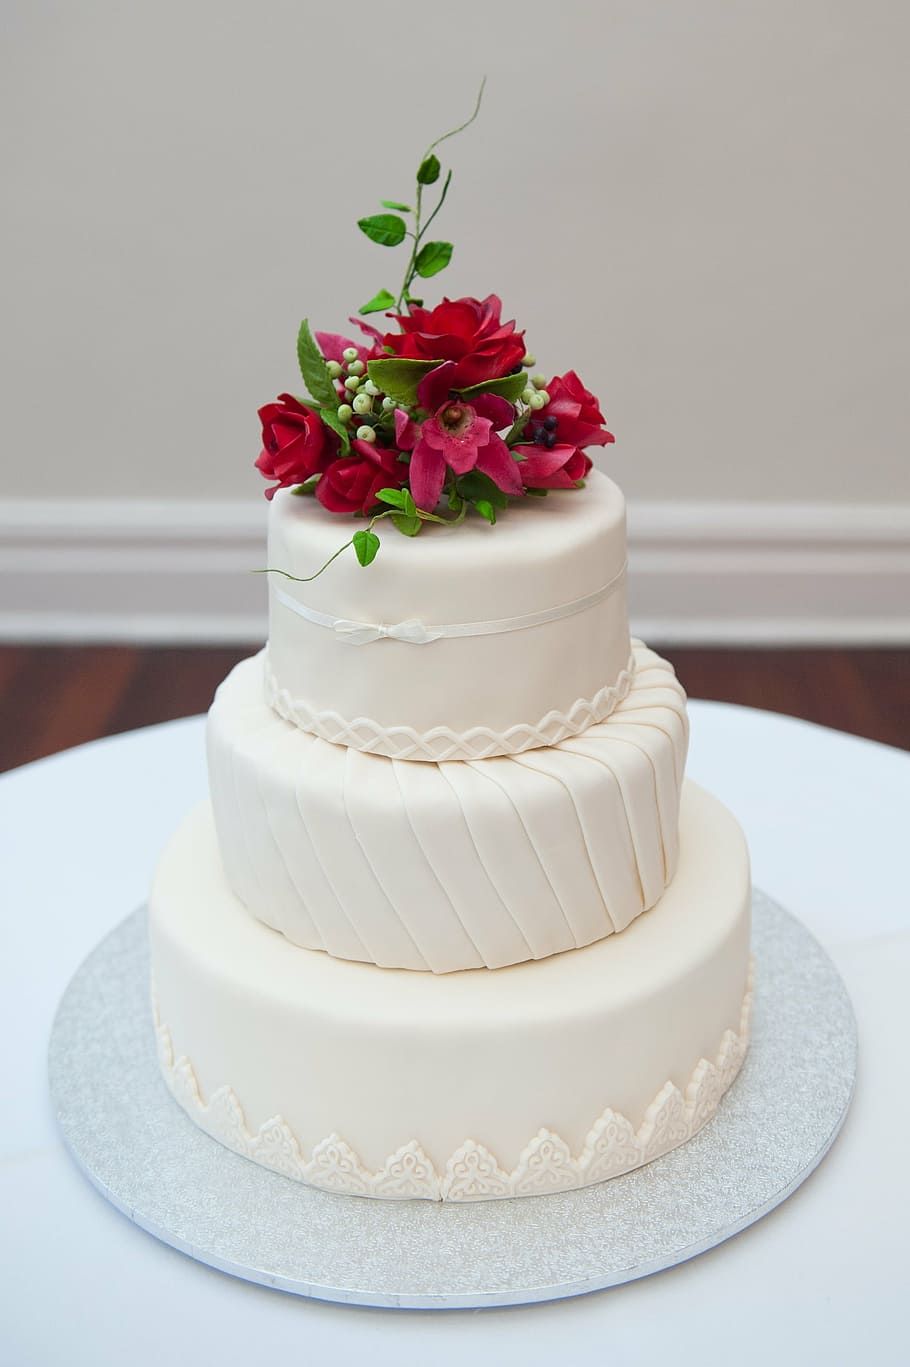 3層, 3層ケーキ, ピンク, 花びらの花, トップ, ウェディングケーキ, 結婚式, ケーキ, 甘い, 白